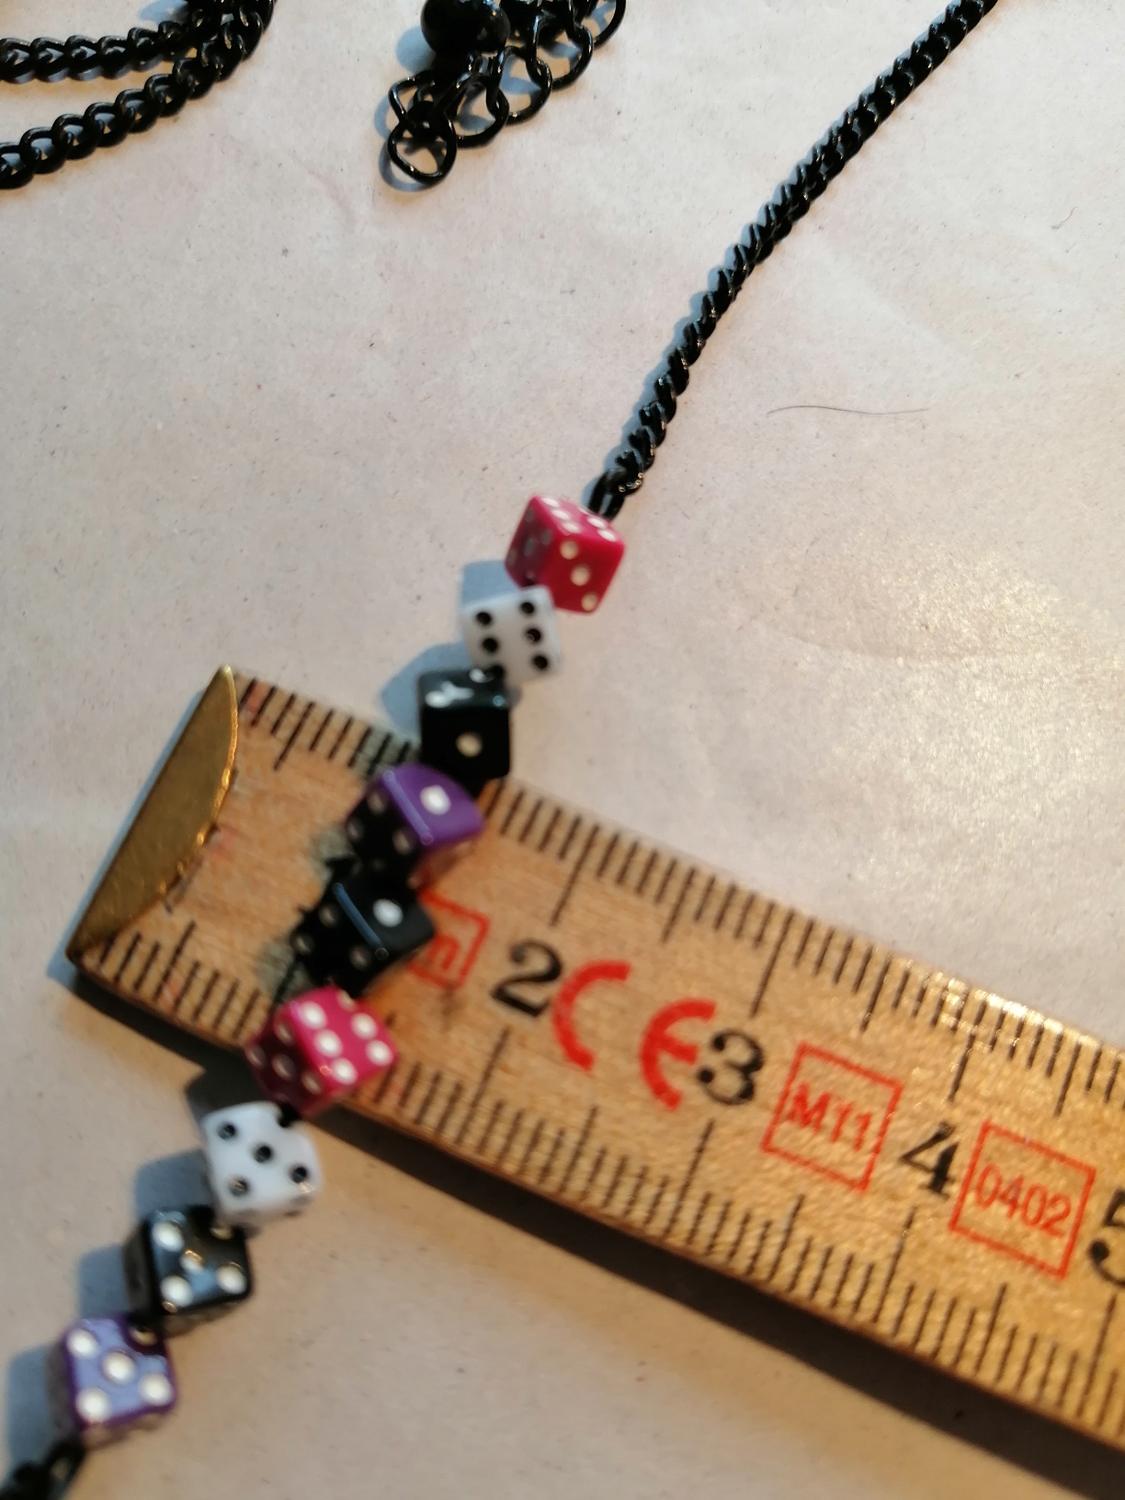 Second hand bijouteri smycke halsband svart med små tärningar rosa lila vita